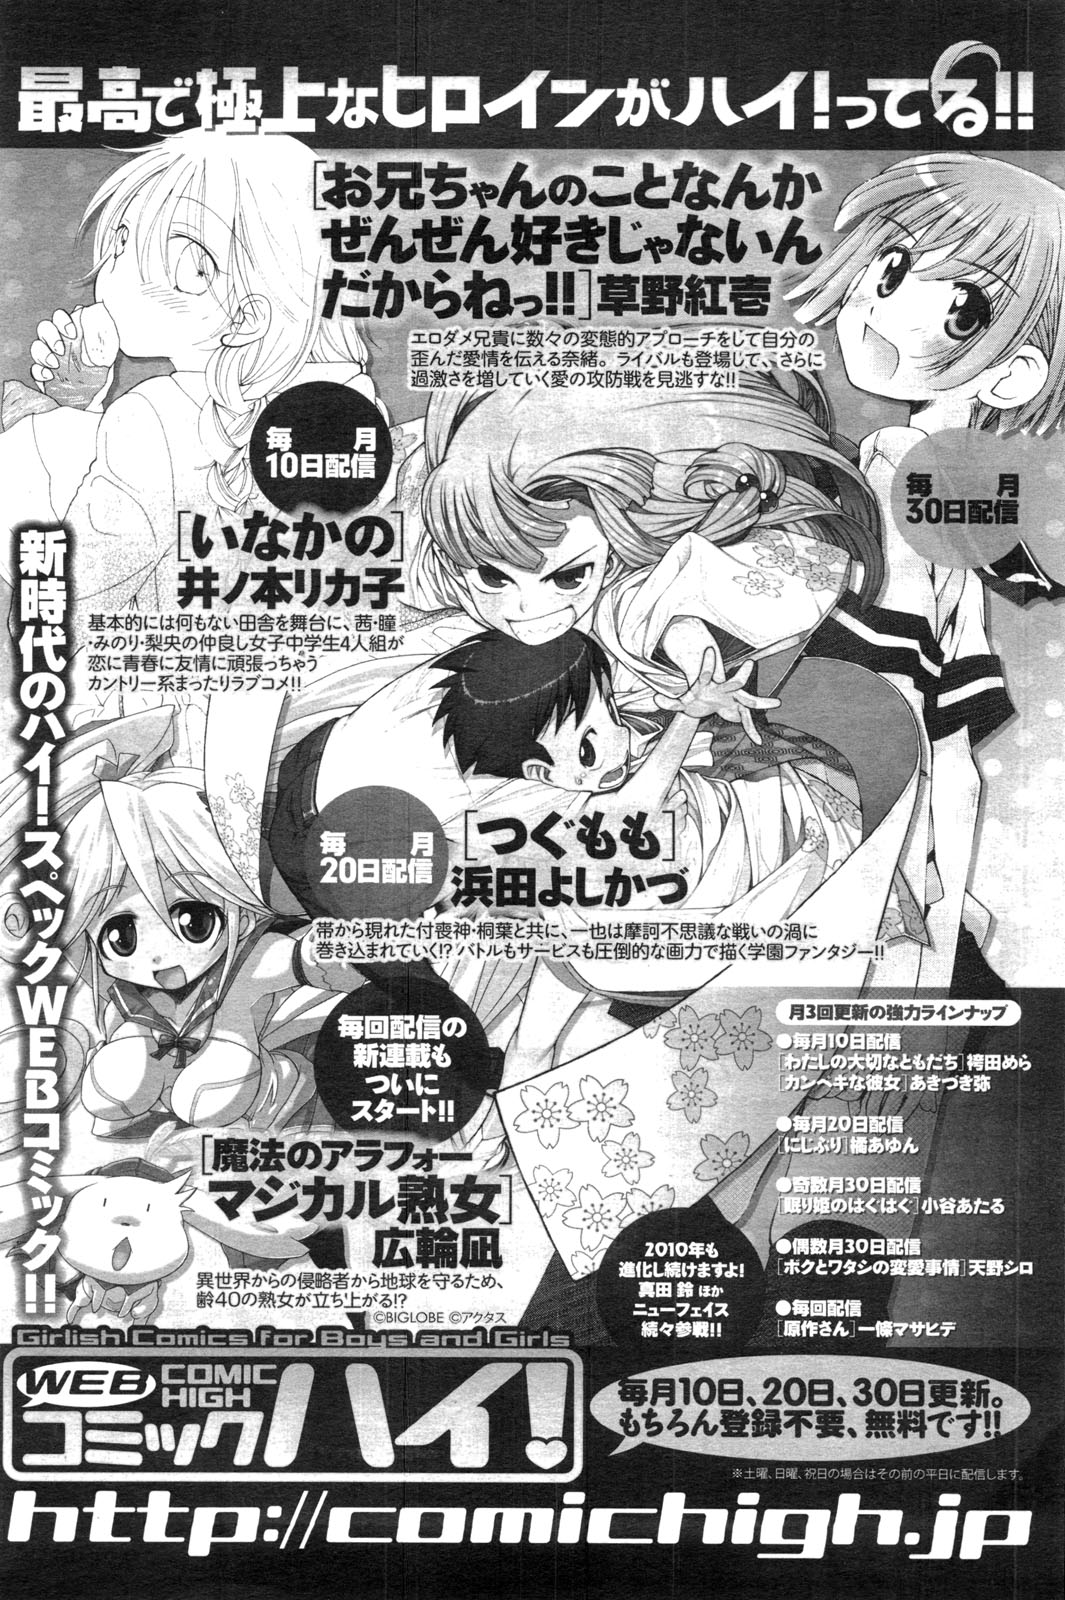 メンズヤングスペシャルIKAZUCHI雷 Vol.13 2010年3月号増刊